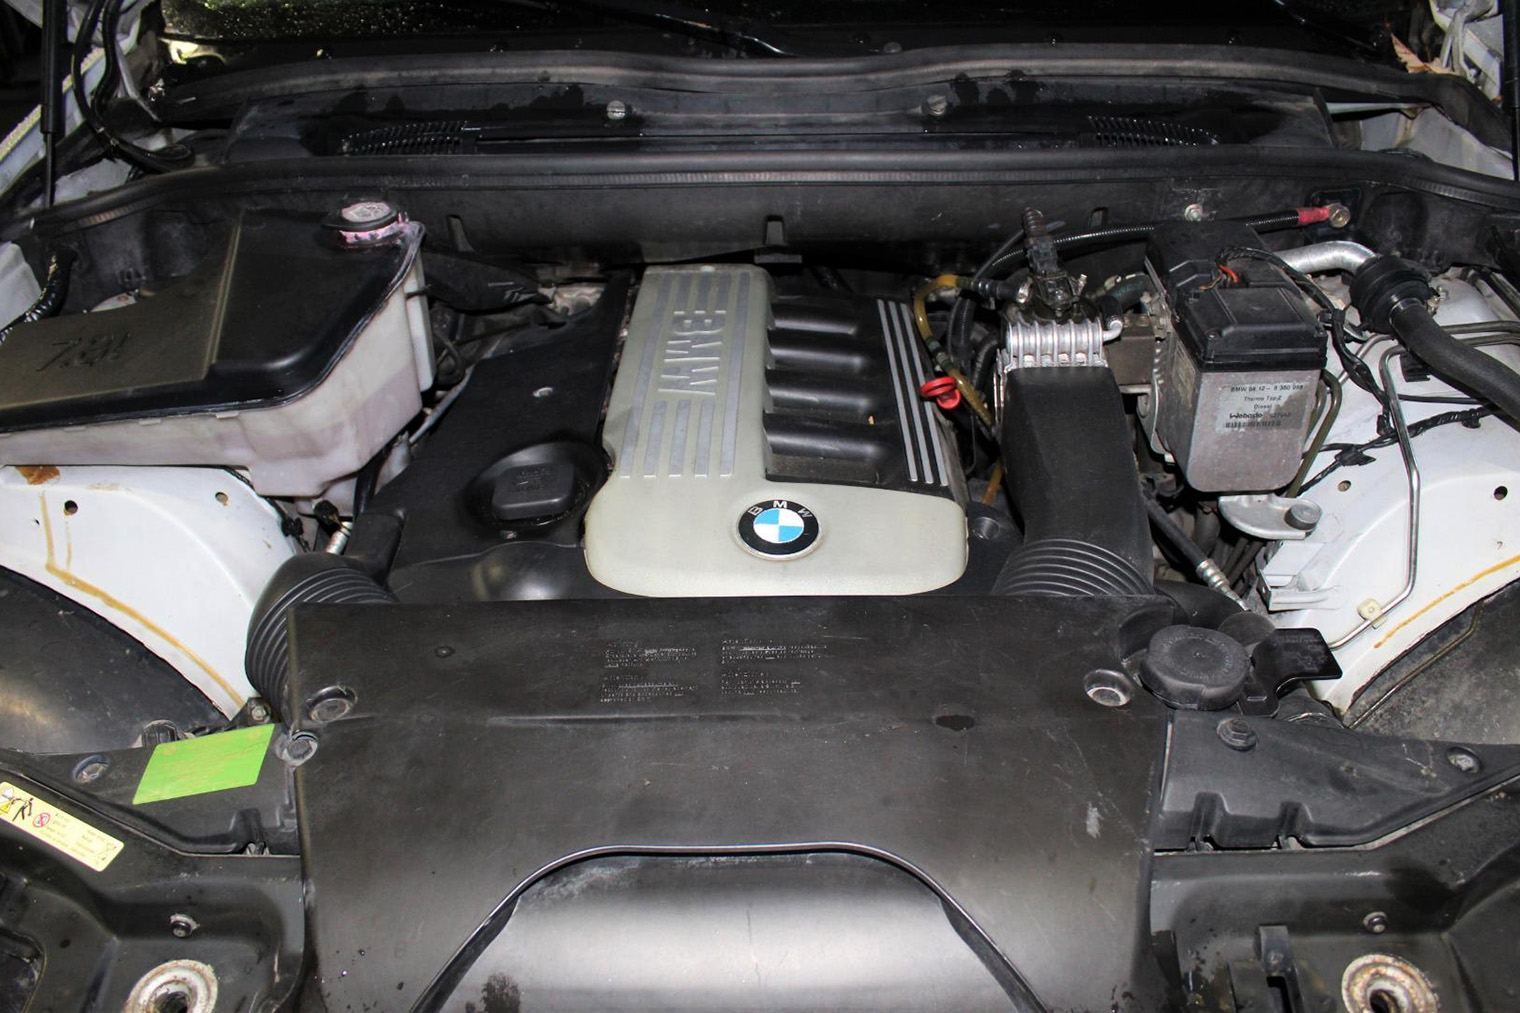 Такой же мотор с другим шильдиком на крышке можно увидеть в BMW Х5, а также в BMW 3 и BMW 5 тех лет. Мощность может незначительно отличаться. Источник: b-parts.com (сайт недоступен из РФ)